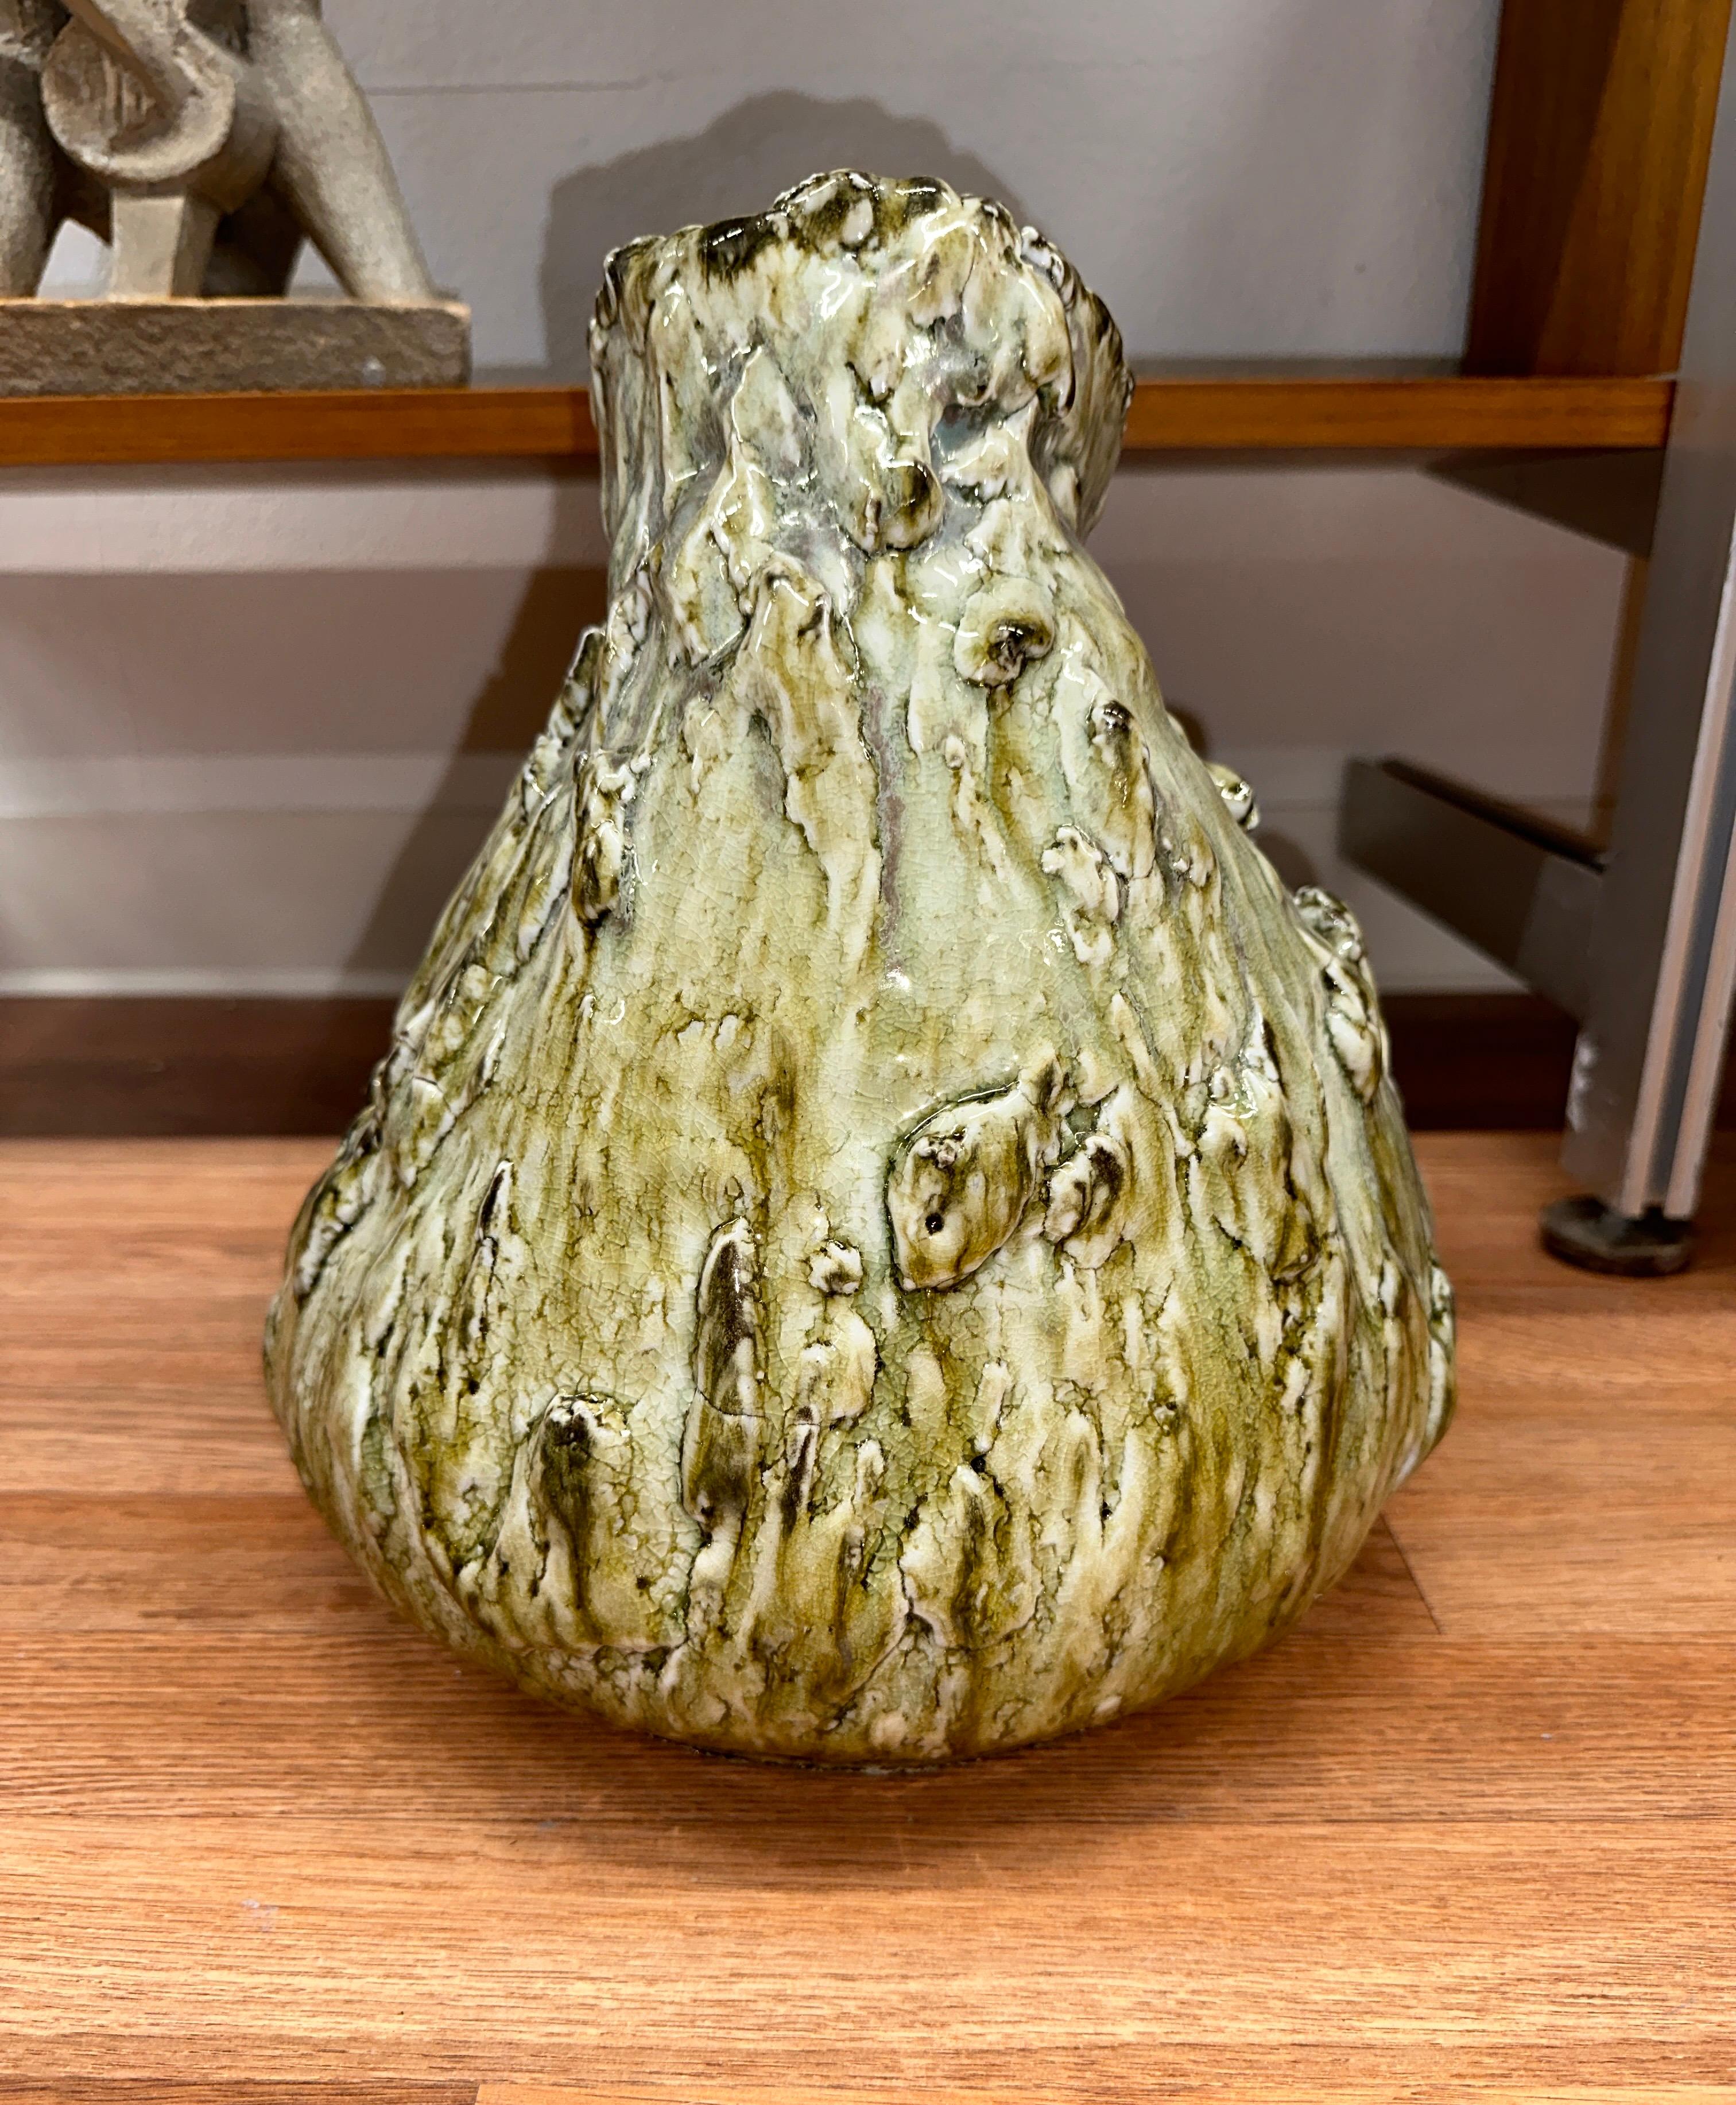 Pièce de céramique magnifiquement émaillée et formée, signée Masaaki 2011 sur la base. Des couleurs étonnantes dans les tons verts. En bon état, avec quelques imperfections de glaçure inhérentes au processus de cuisson. 